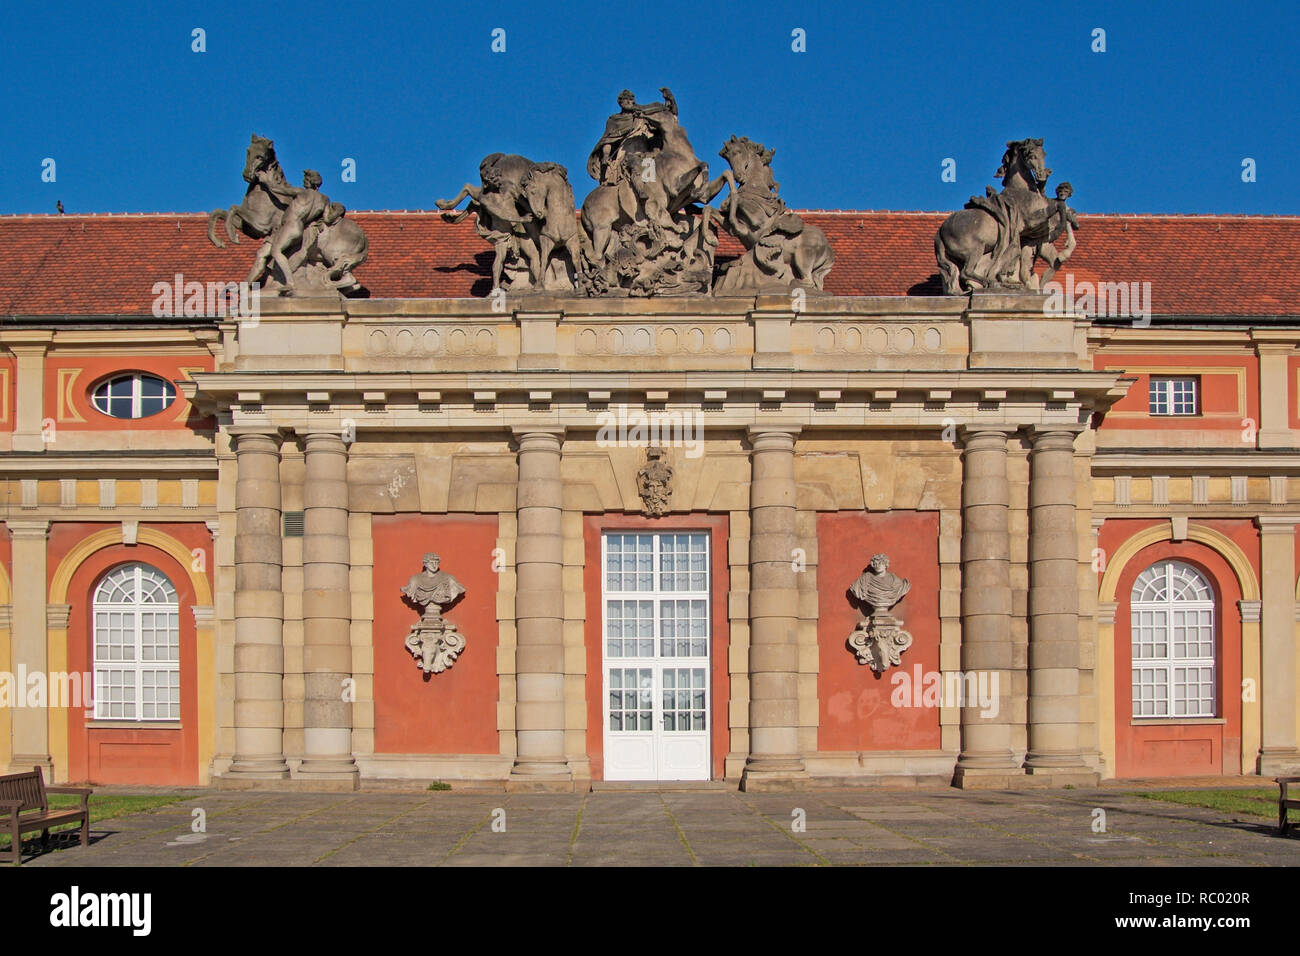 Filmmuseum im ehemaligen Marstall, der 1675 als Orangerie errichtet und seit 1714 als Pferdestall genutzt wurde, Potsdam, Brandenburg, Deutschland, Eu Stock Photo